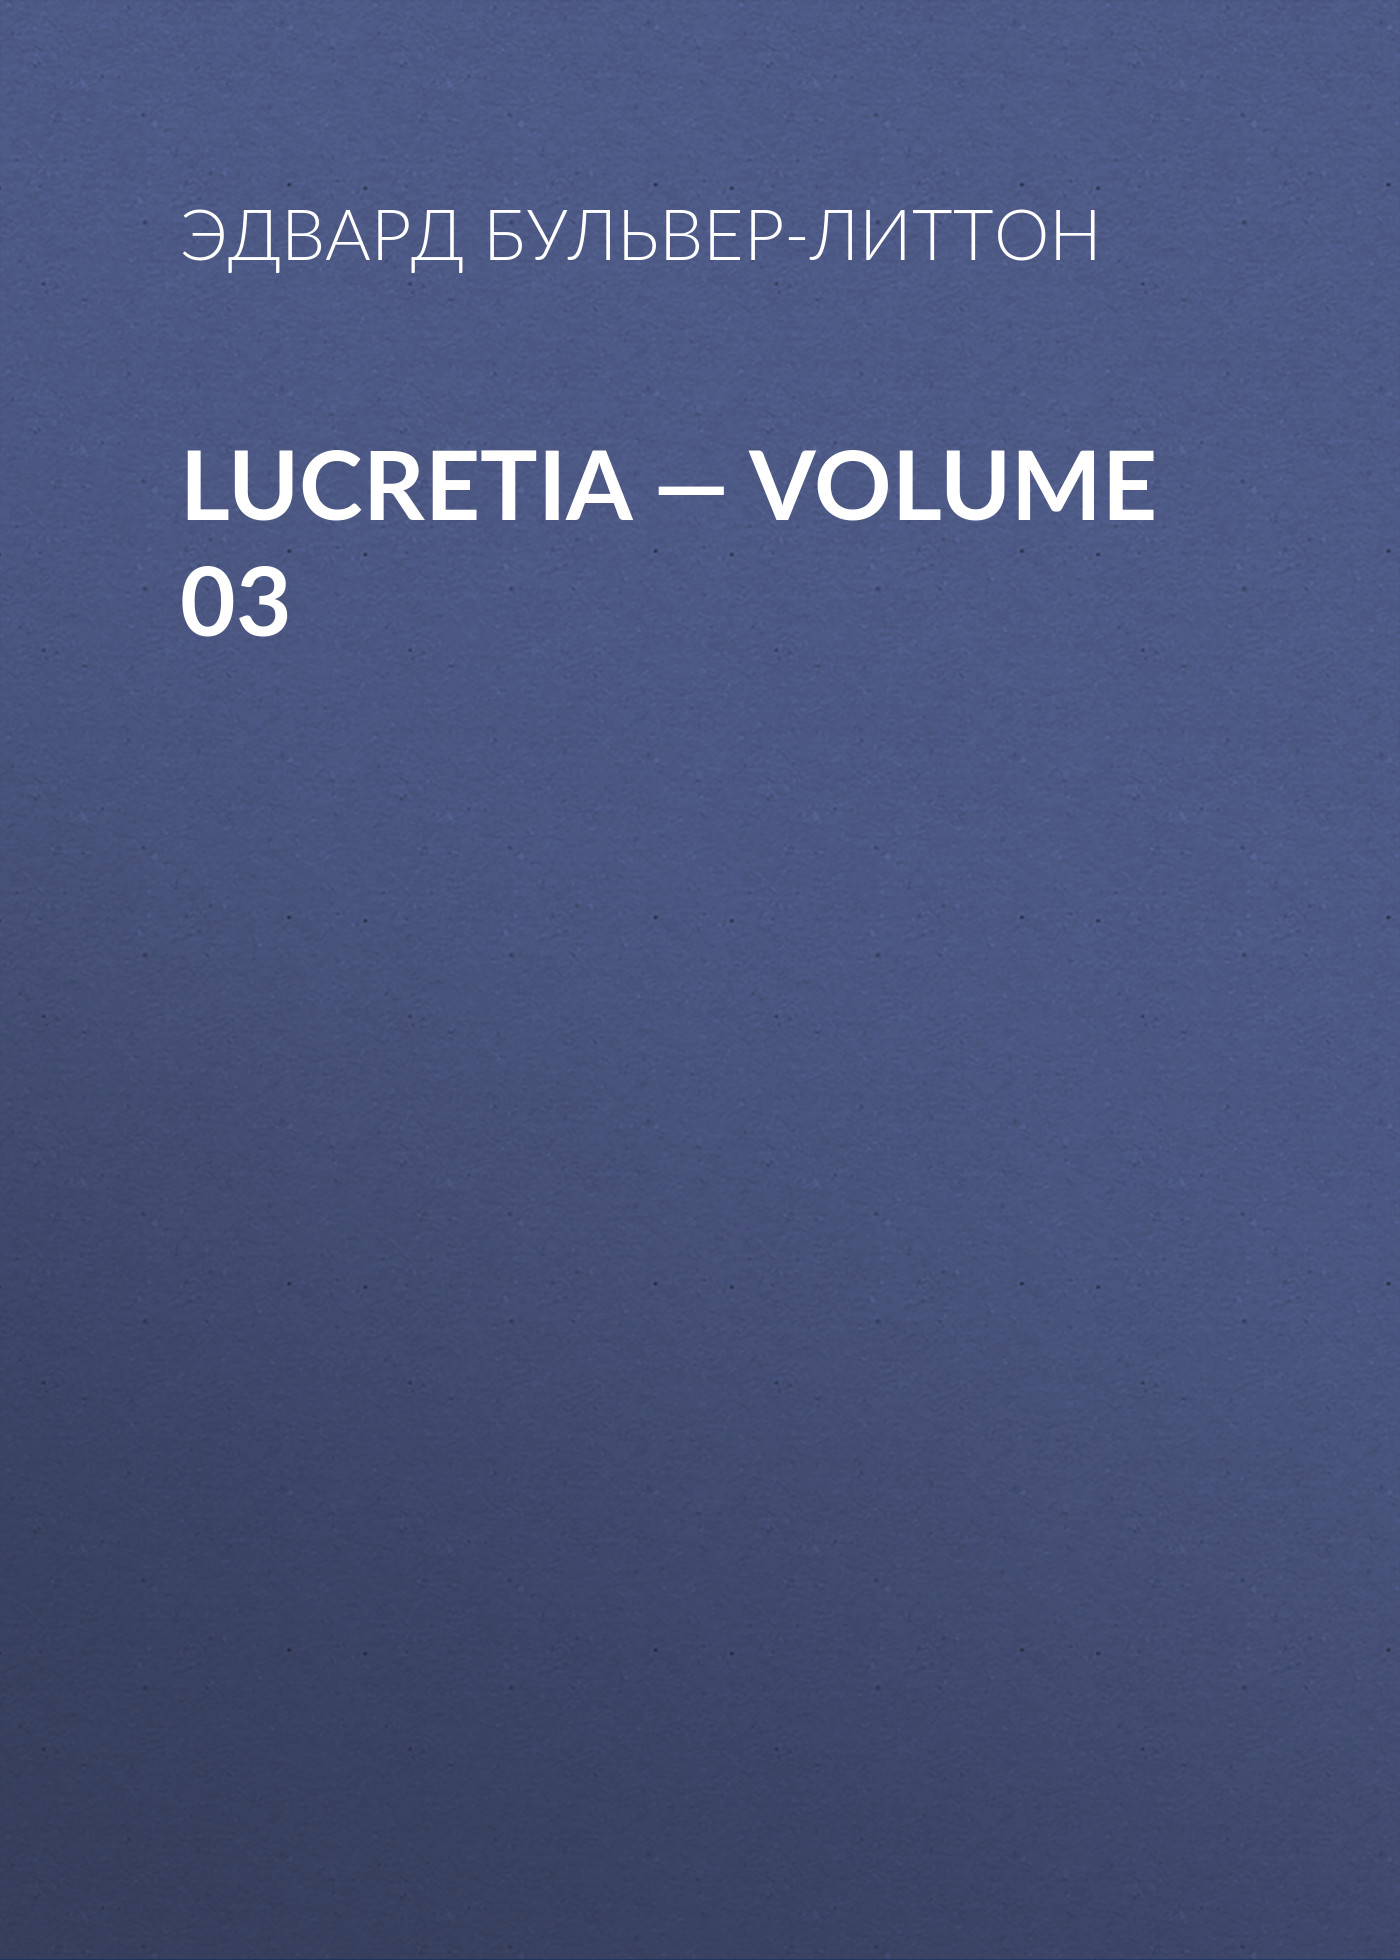 Книга Lucretia – Volume 03 из серии , созданная Эдвард Бульвер-Литтон, может относится к жанру Литература 19 века, Зарубежные детективы. Стоимость электронной книги Lucretia – Volume 03 с идентификатором 35009041 составляет 0 руб.